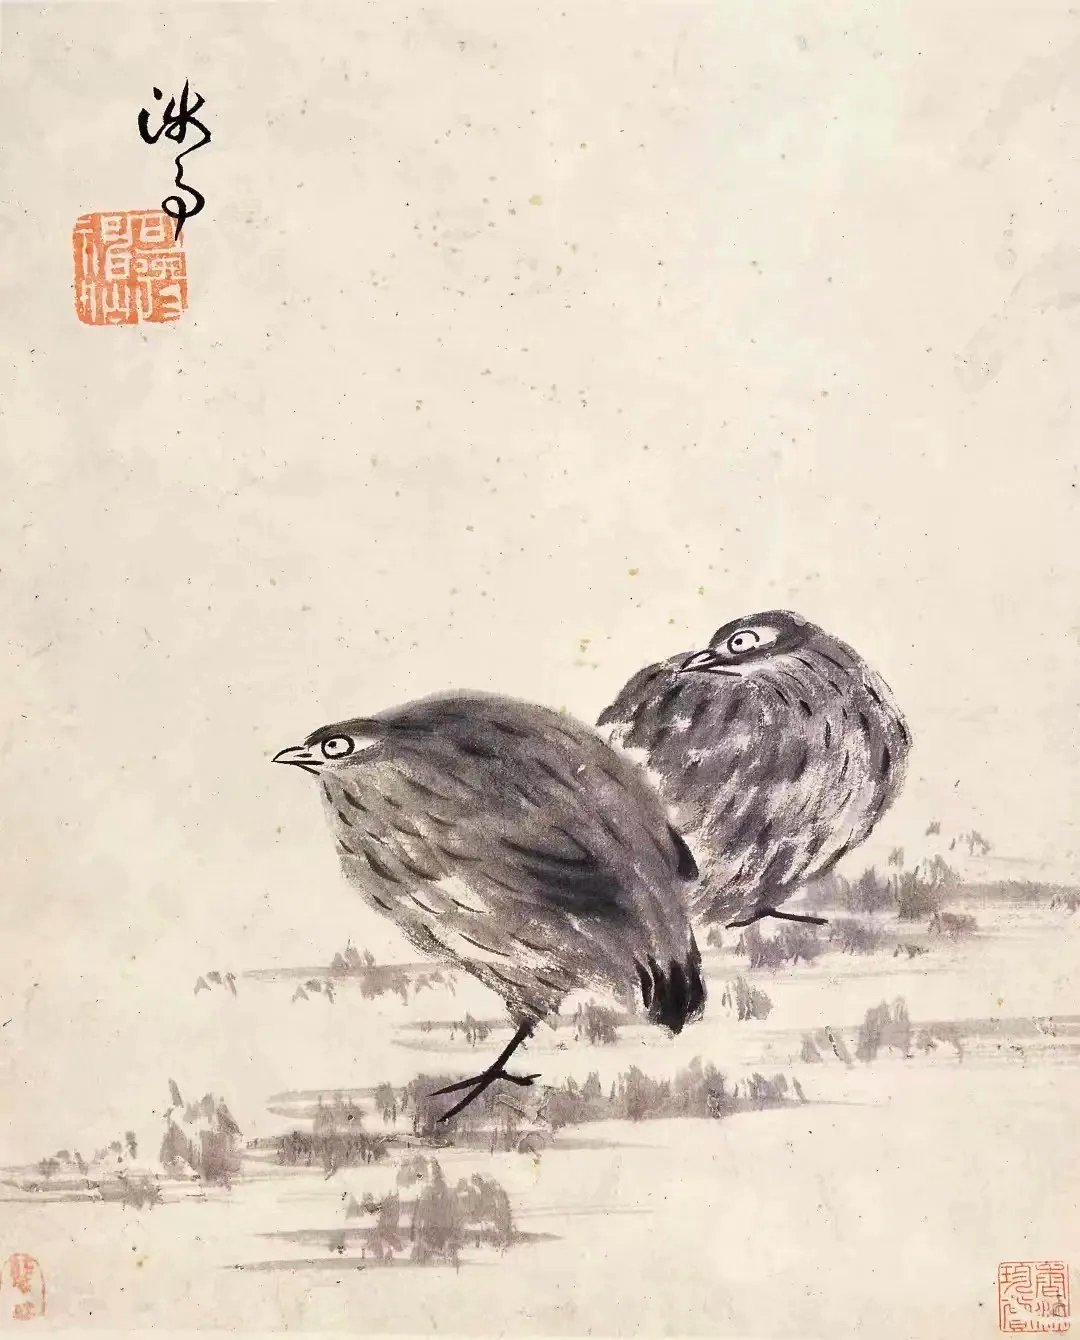  “艺海藏珍”广州艺术博物院藏历代绘画精品展·花鸟篇